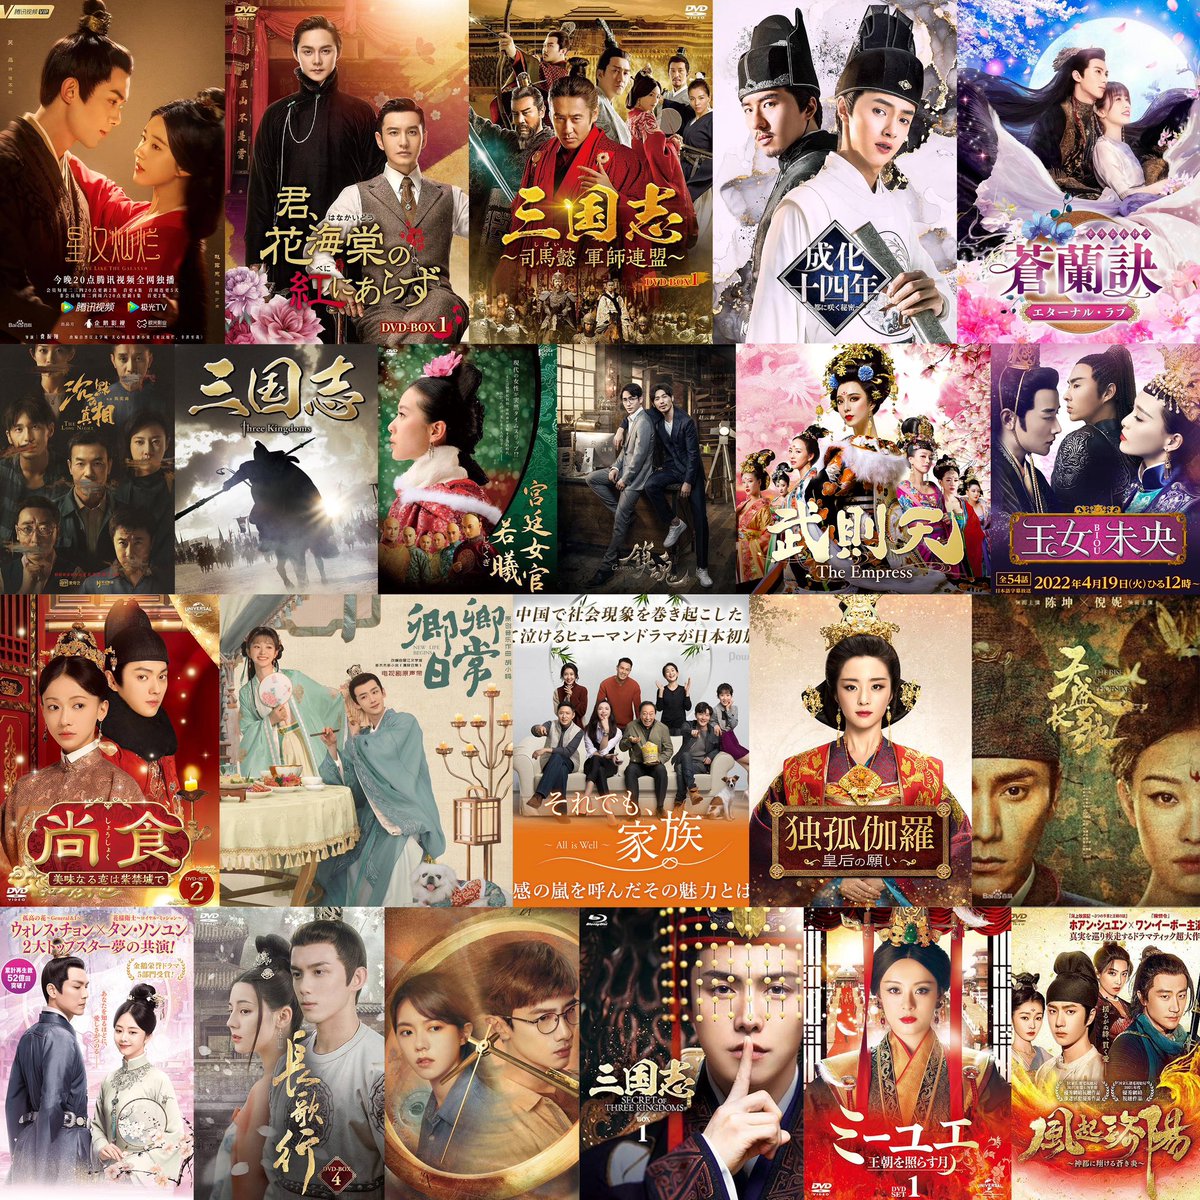 日本人に聞いた一番好きな中国ドラマ
#中国ドラマ総選挙
TOP50の結果をまとめました！！
ドラマ選びの参考にどうぞ🤲
（上：日本語、下：中国語タイトル）